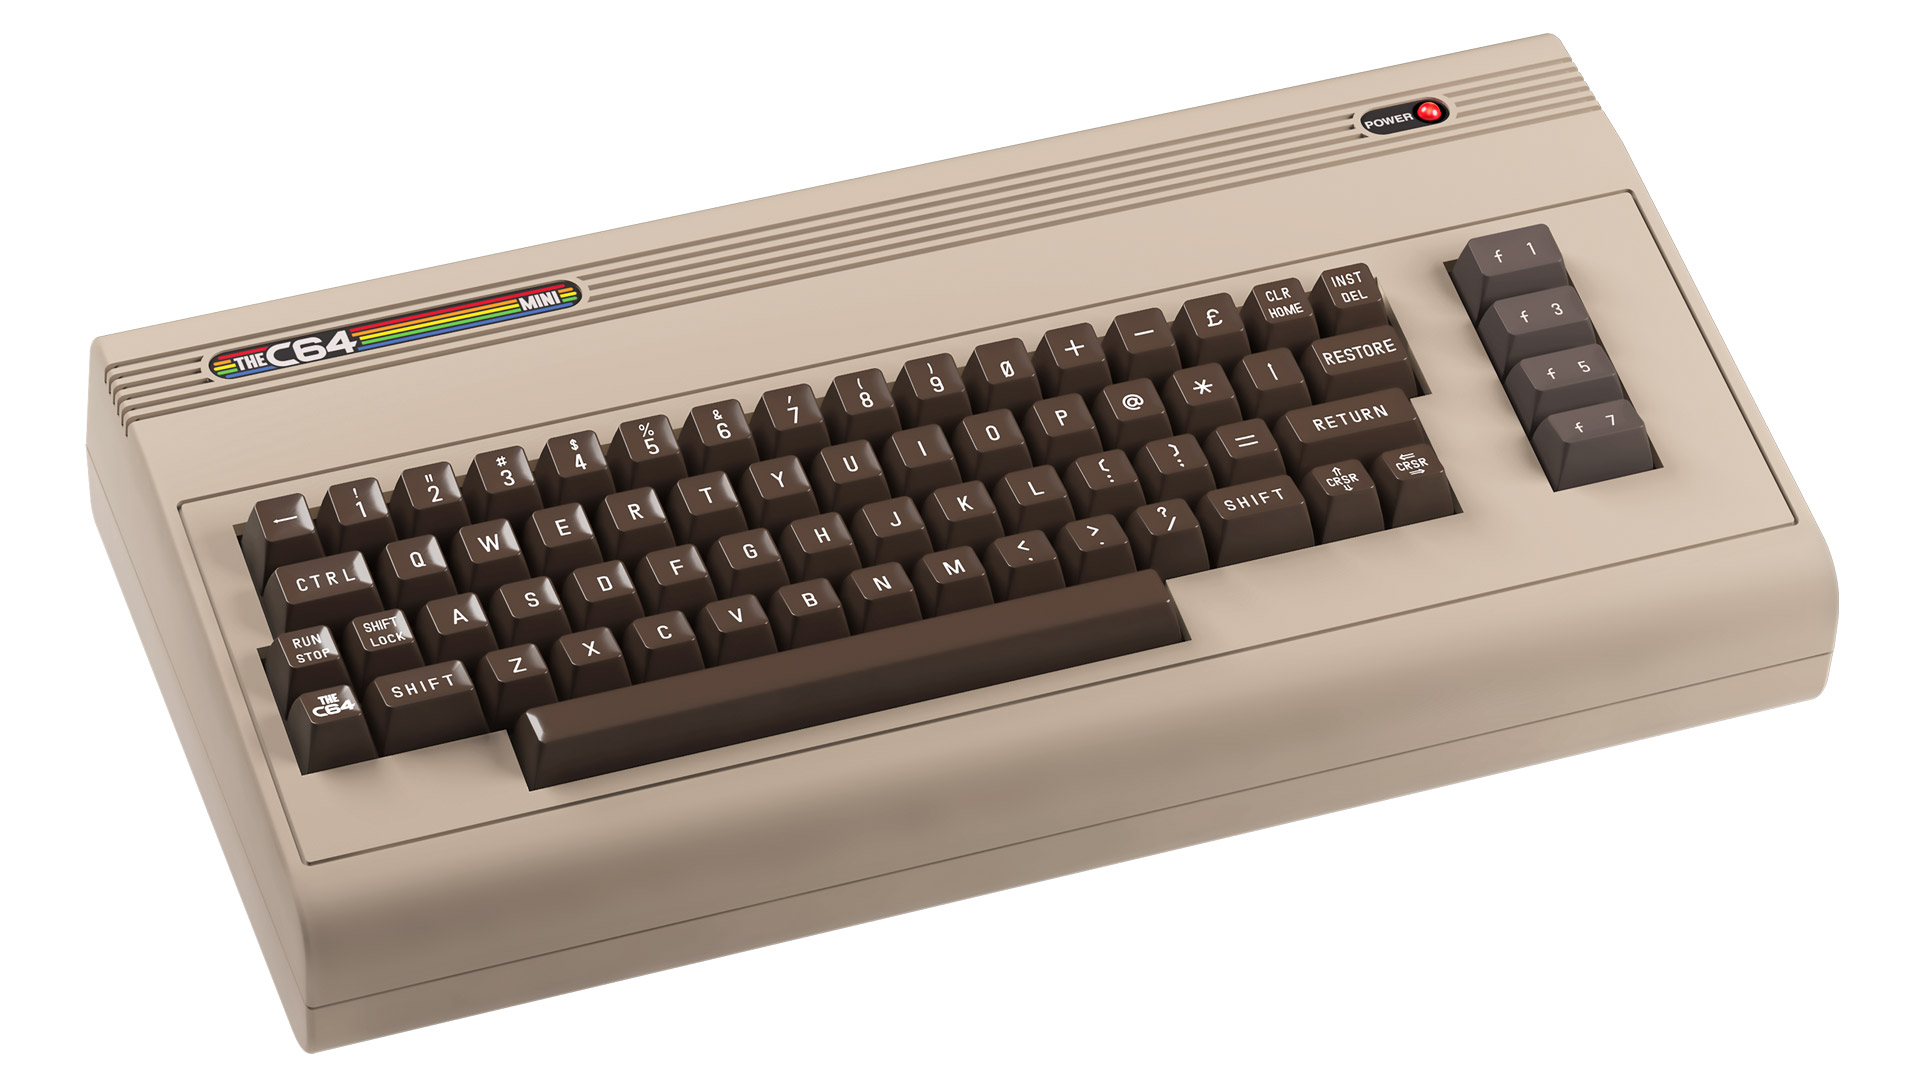 The C64 Mini Console